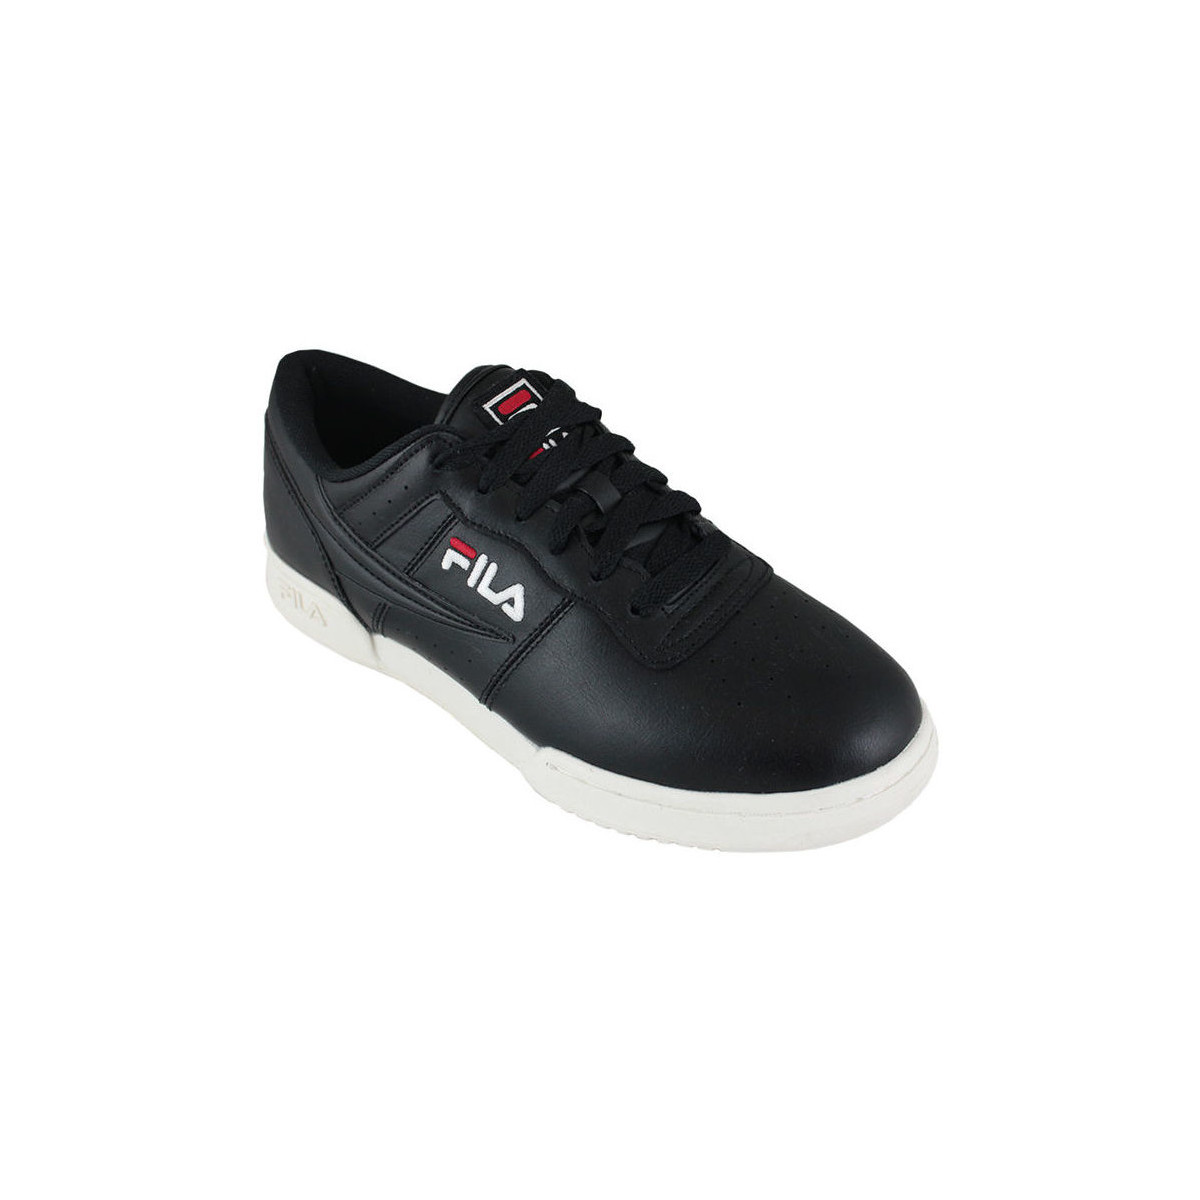 Schoenen Heren Sneakers Fila original fitness black Zwart